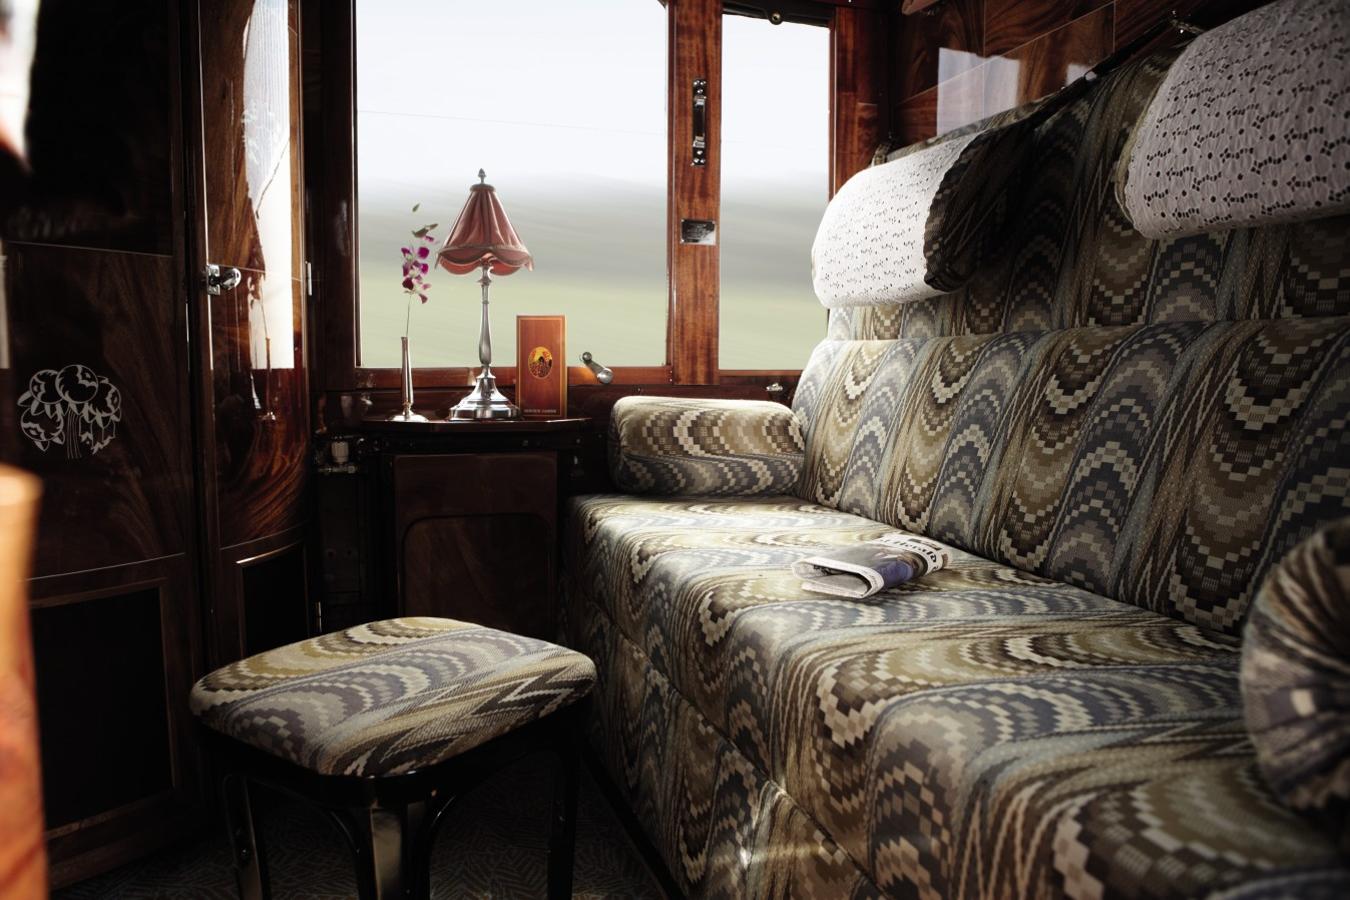 Venice Orient Express. La nueva decoración respeta el estilo Art Déco que caracteriza al tren desde la década de 1920. Cada suite, a su vez, toma elementos de la ciudad de la que toma su nombre